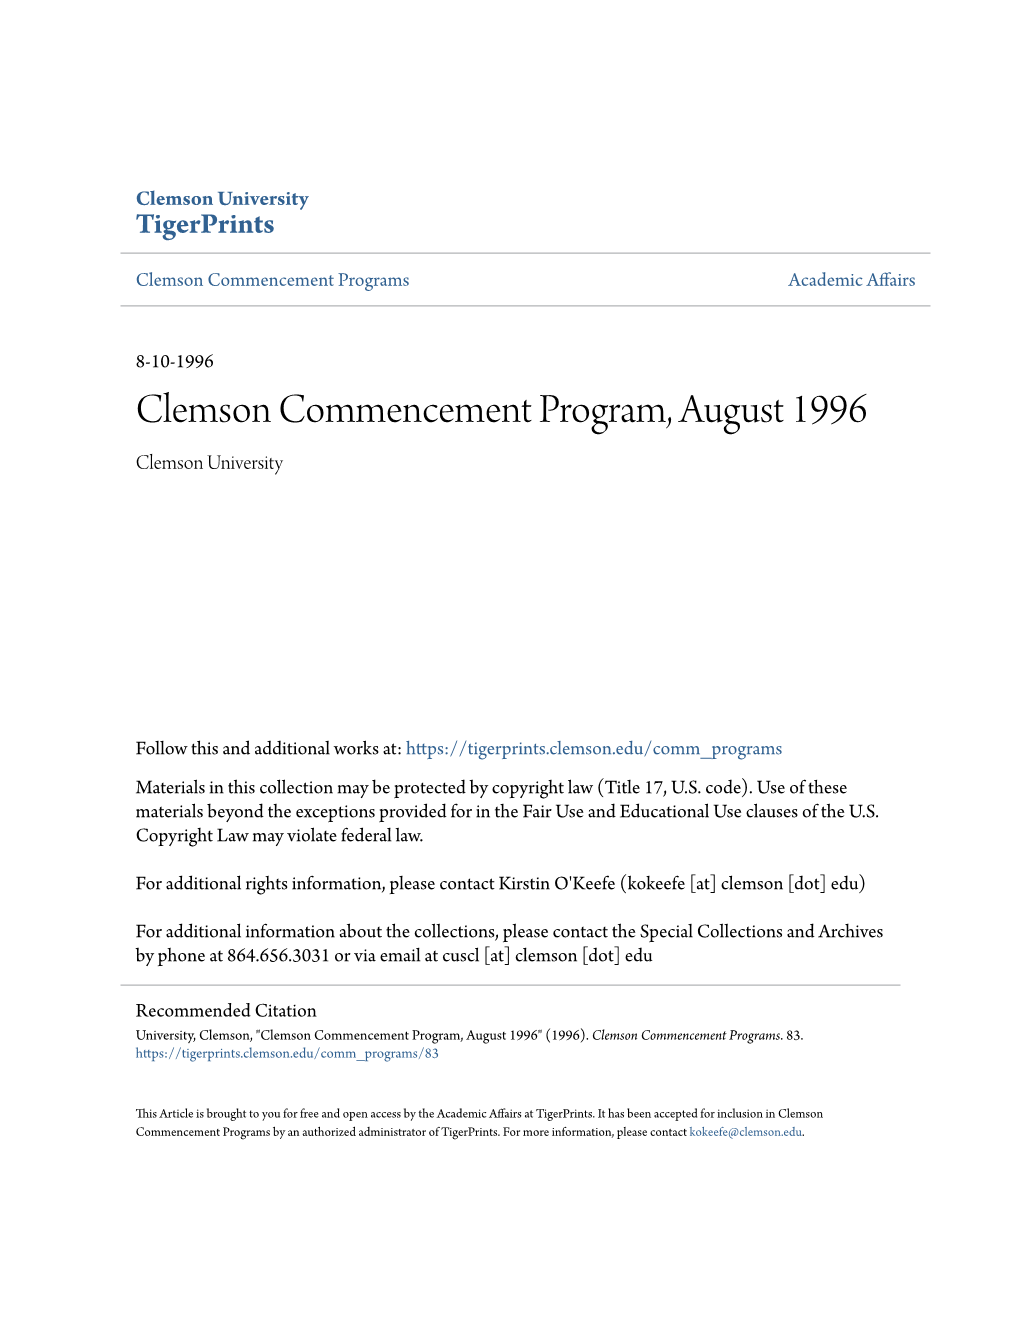 Clemson Commencement Program, August 1996 Clemson University